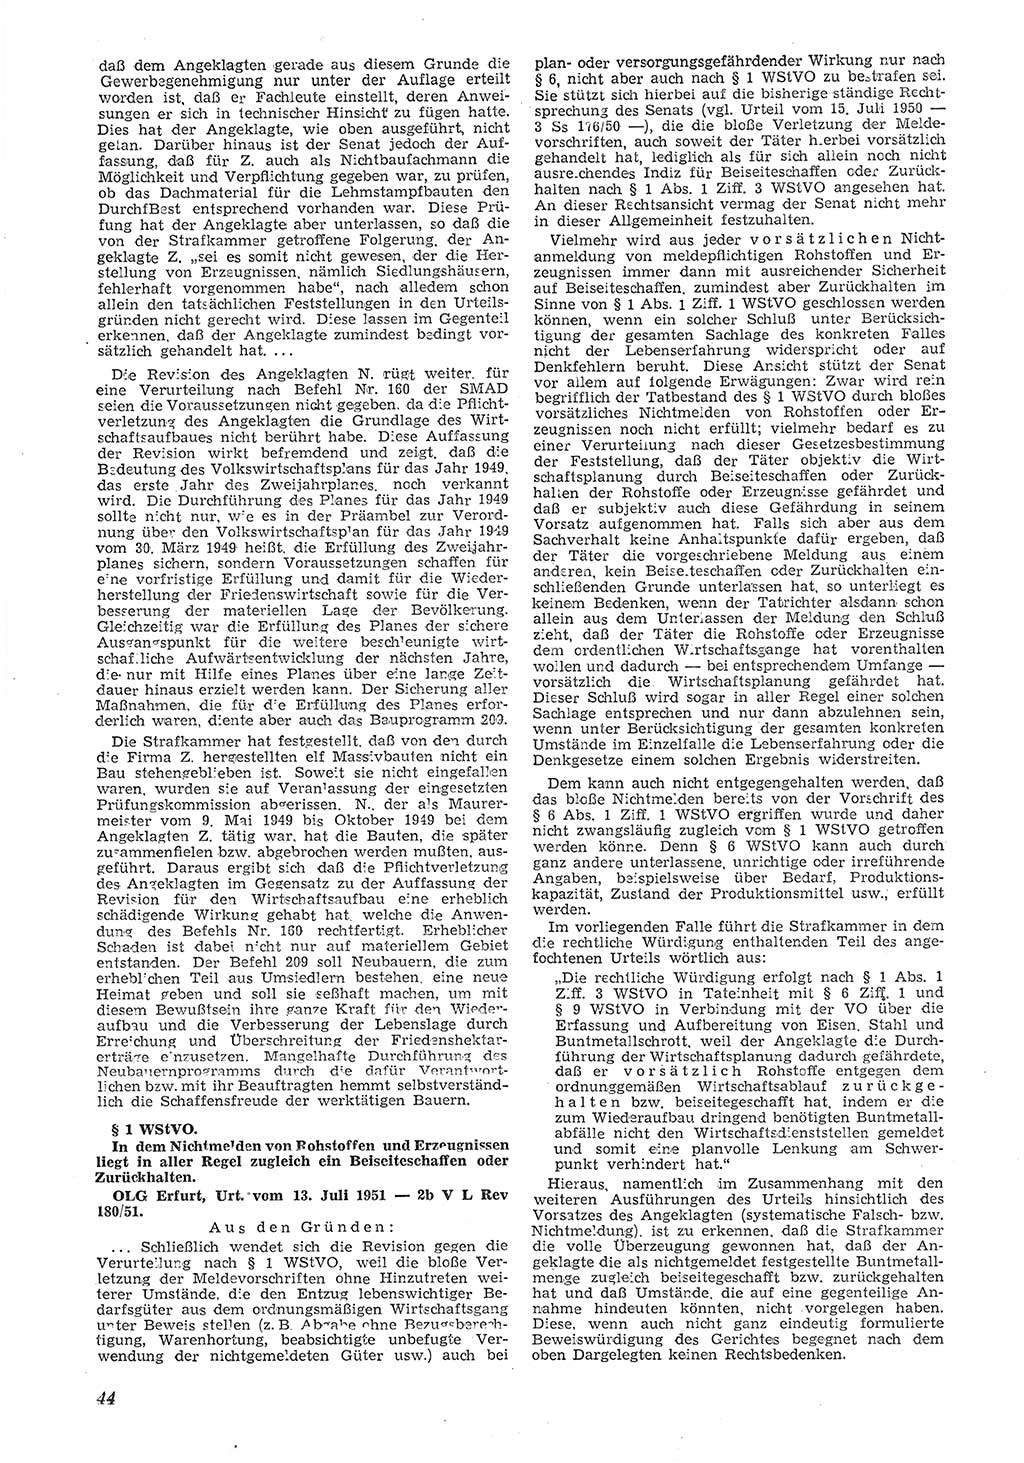 Neue Justiz (NJ), Zeitschrift für Recht und Rechtswissenschaft [Deutsche Demokratische Republik (DDR)], 6. Jahrgang 1952, Seite 44 (NJ DDR 1952, S. 44)